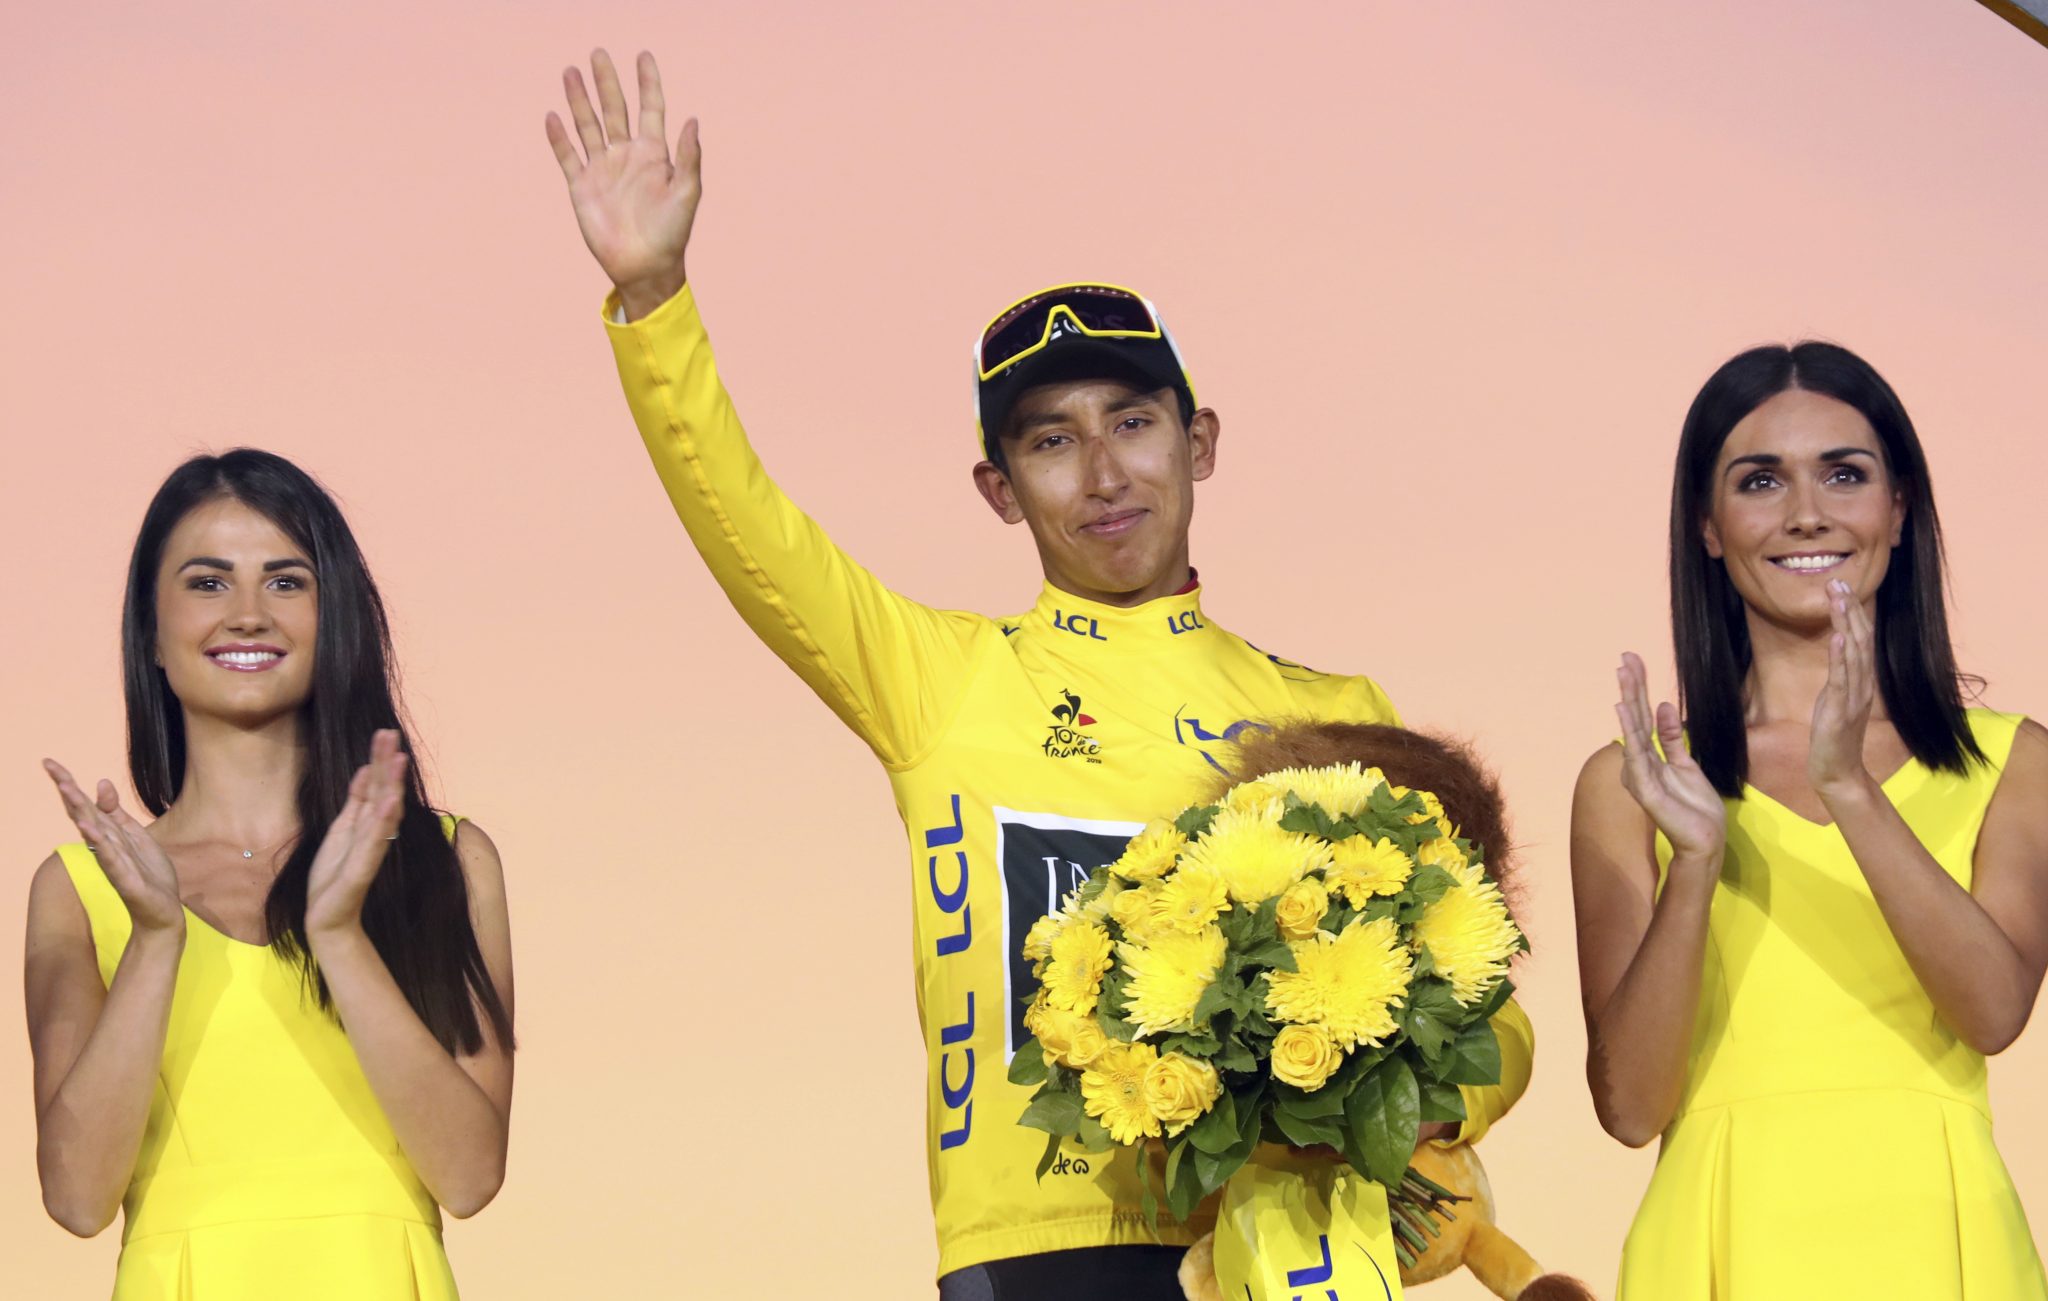 Der Sieger der Tour de France 2019, Egan Bernal,; künftig soll eine Podiumshostess durch einen Mann ersetzt werden Foto: picture alliance / AP Photo